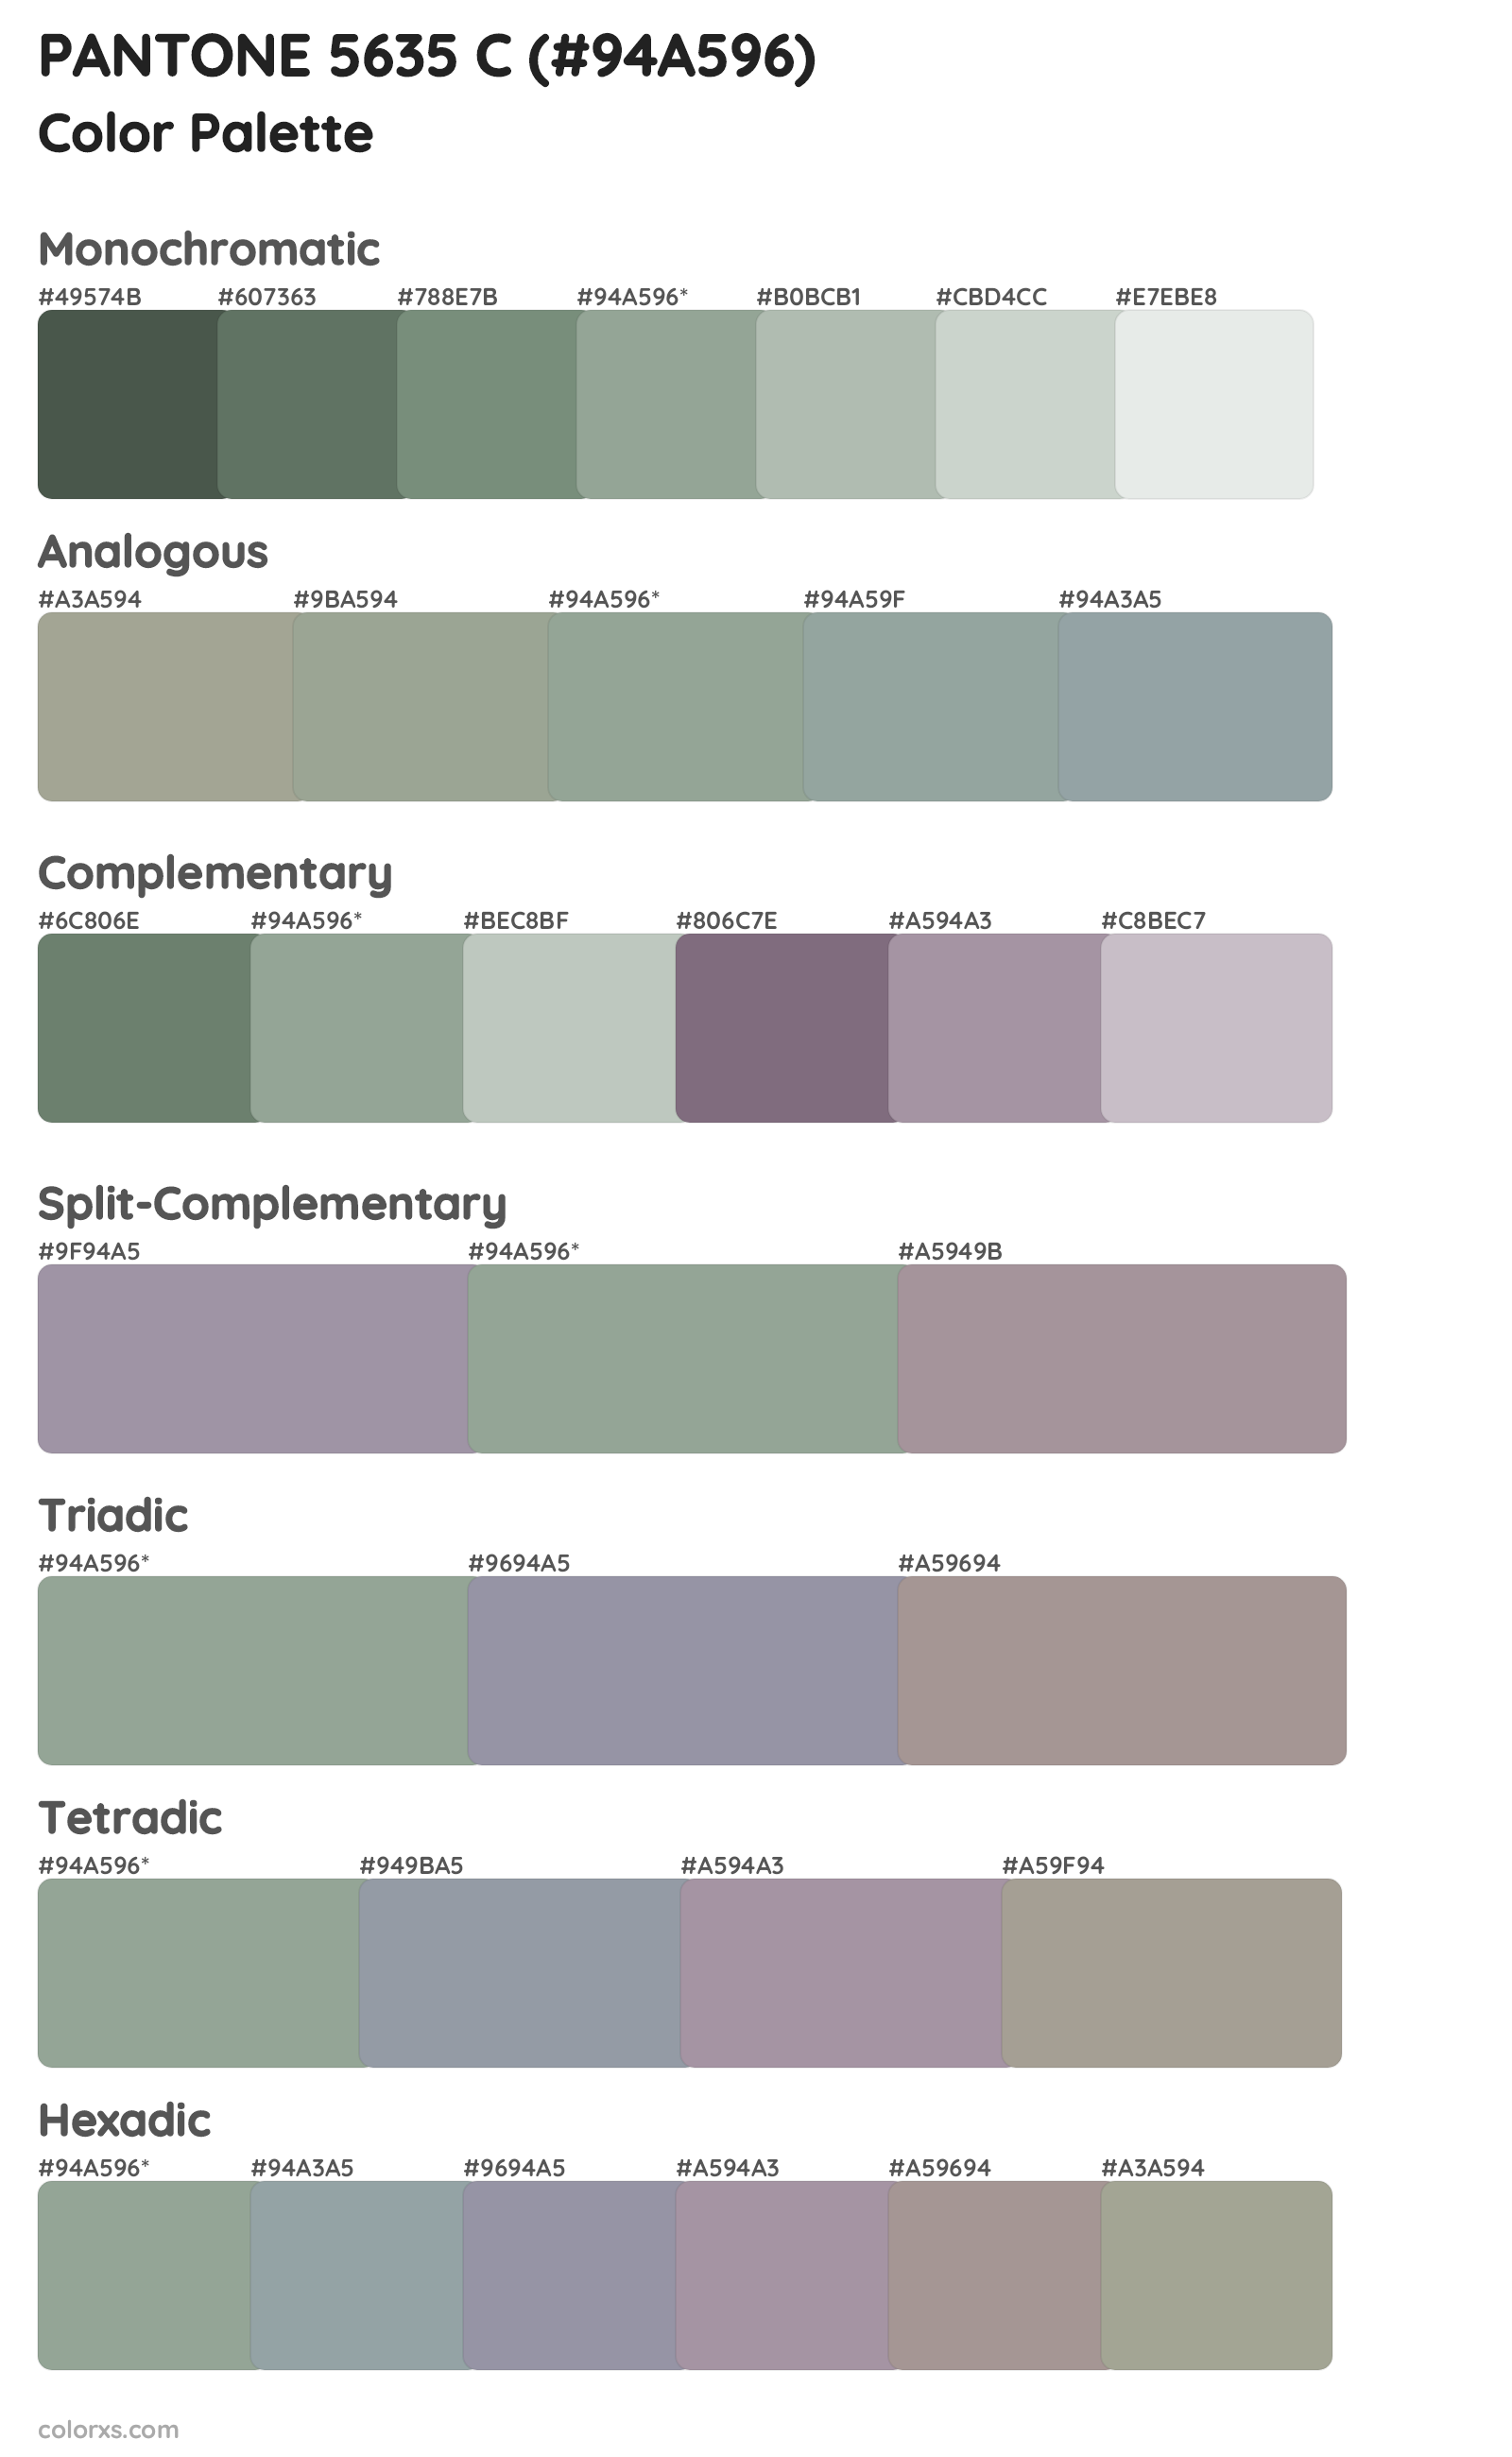 PANTONE 5635 C Color Scheme Palettes